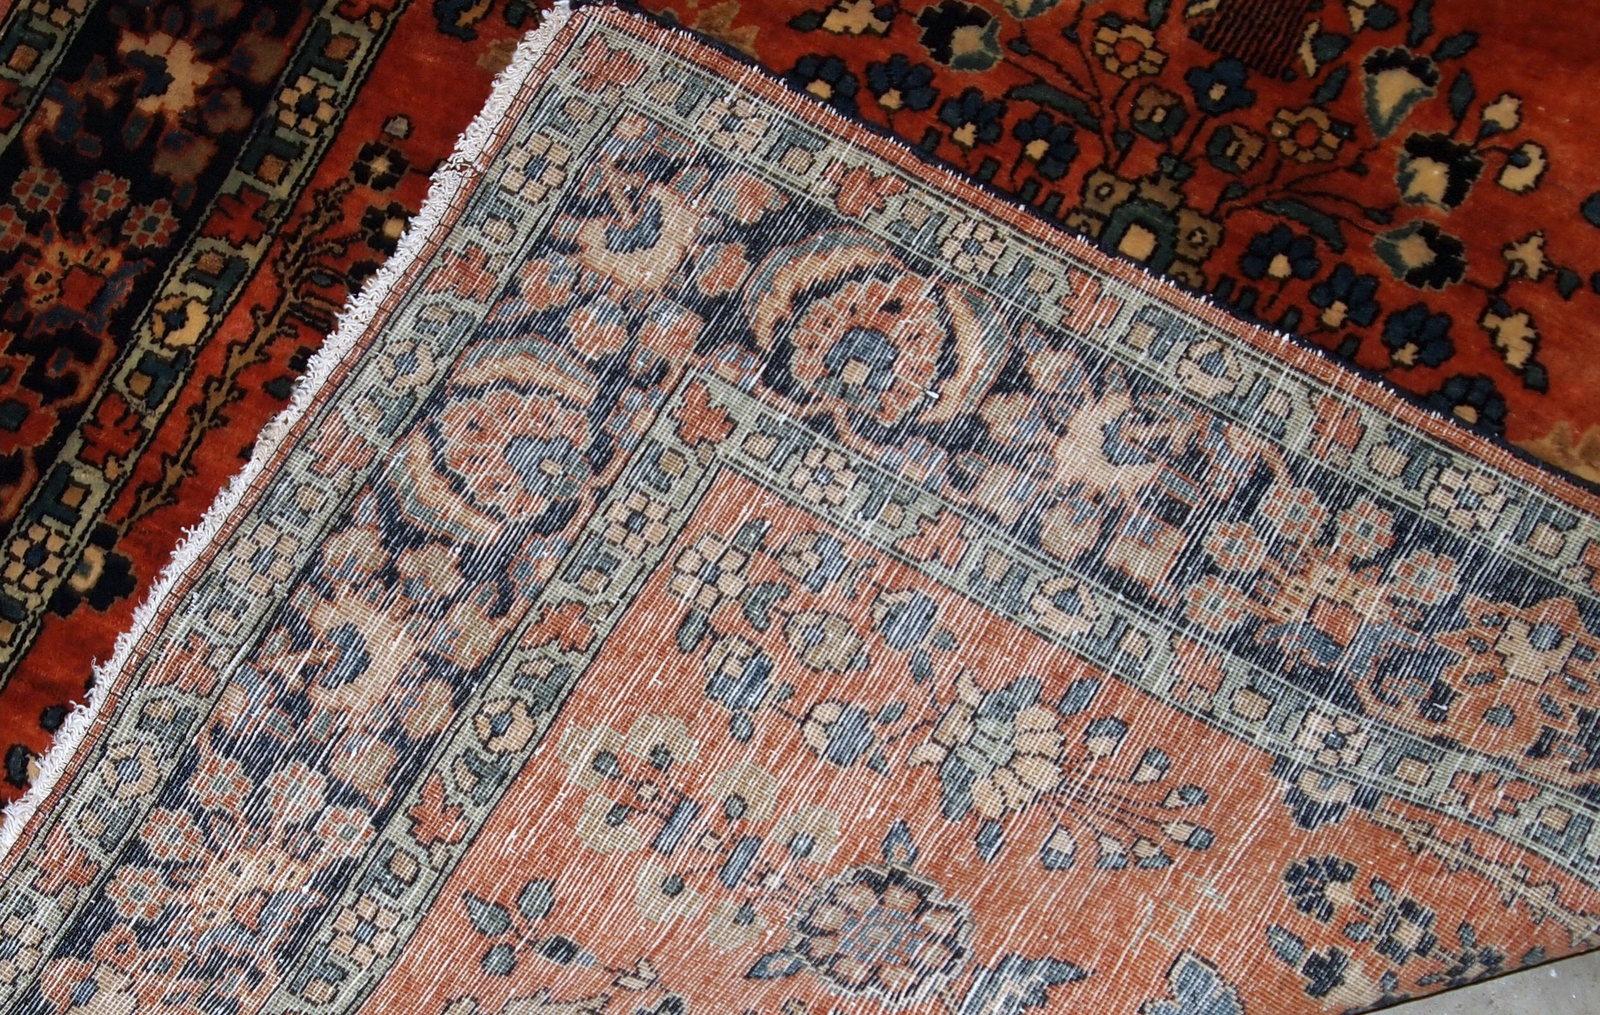 Handgefertigter antiker Teppich im Sarouk-Stil in gutem Originalzustand. Dieser Teppich stammt vom Anfang des 20. Jahrhunderts.

- Zustand: original gut, 

- um 1900,

- Größe: 3,5' x 5,5' (106cm x 167cm),

- Material: Wolle,

-